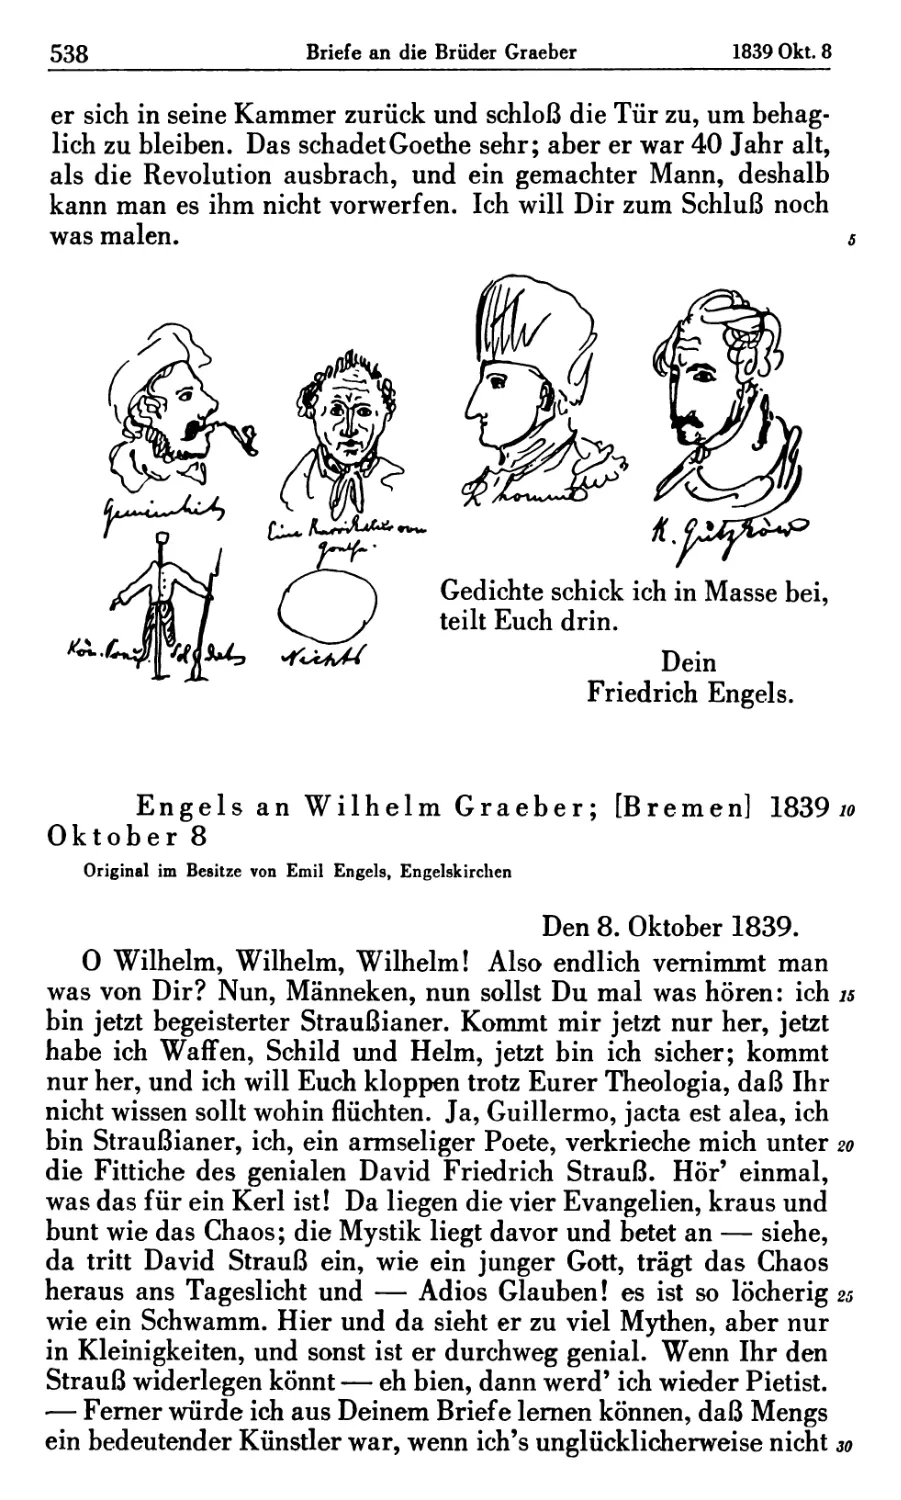 Engels an Wilhelm Graeber; [Bremen] 1839 Oktober 8